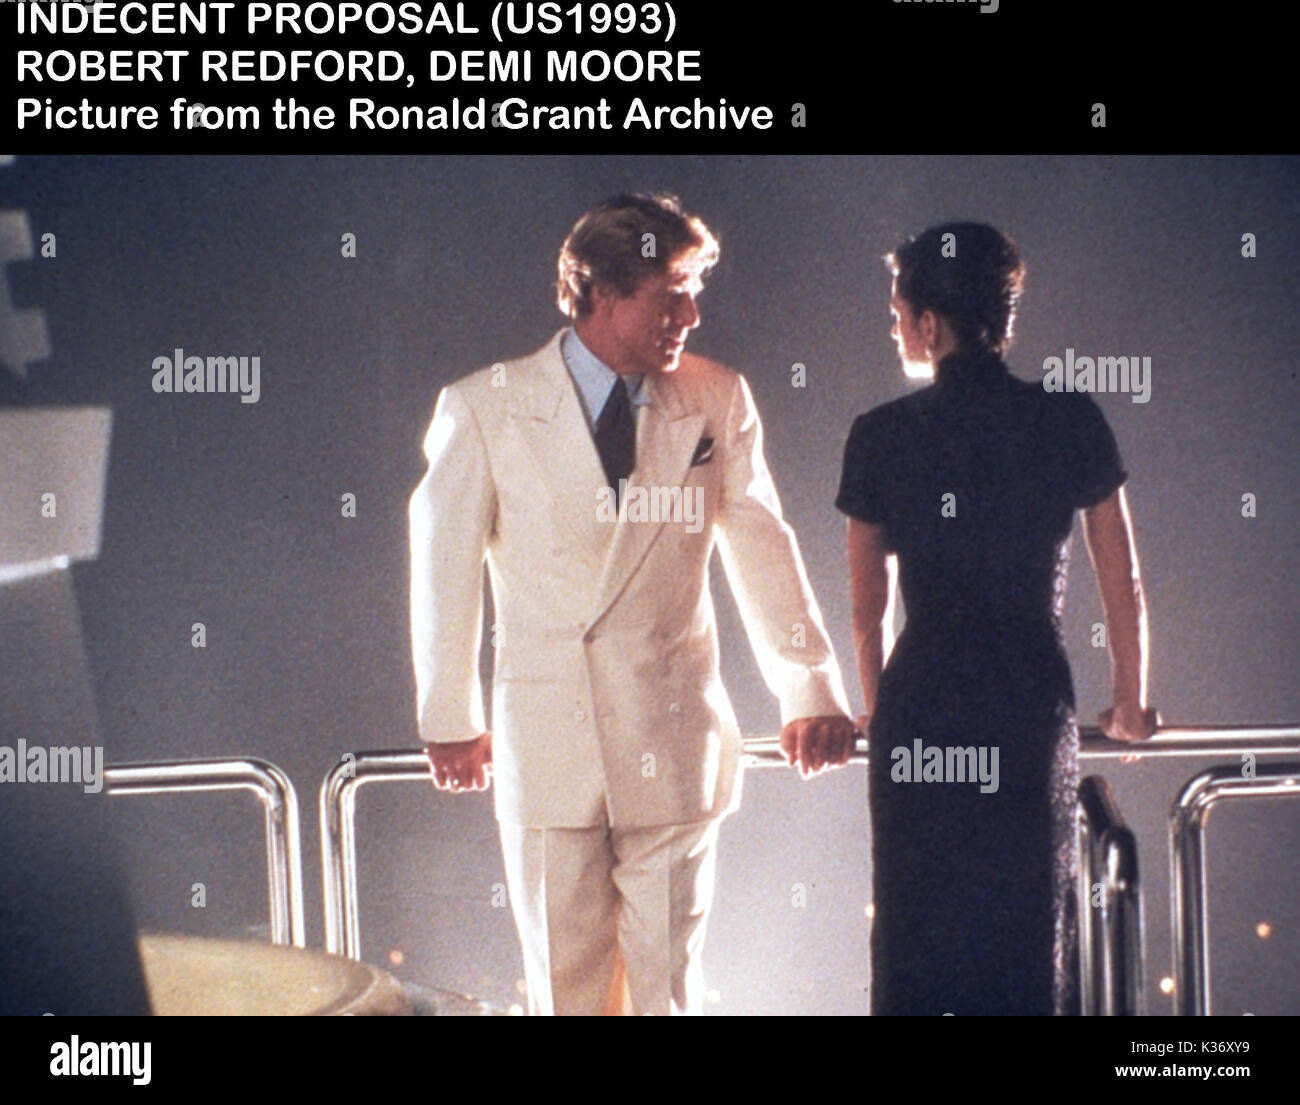 Unanständig VORSCHLAG Demi Moore, Robert Redford Datum: 1993 Stockfoto